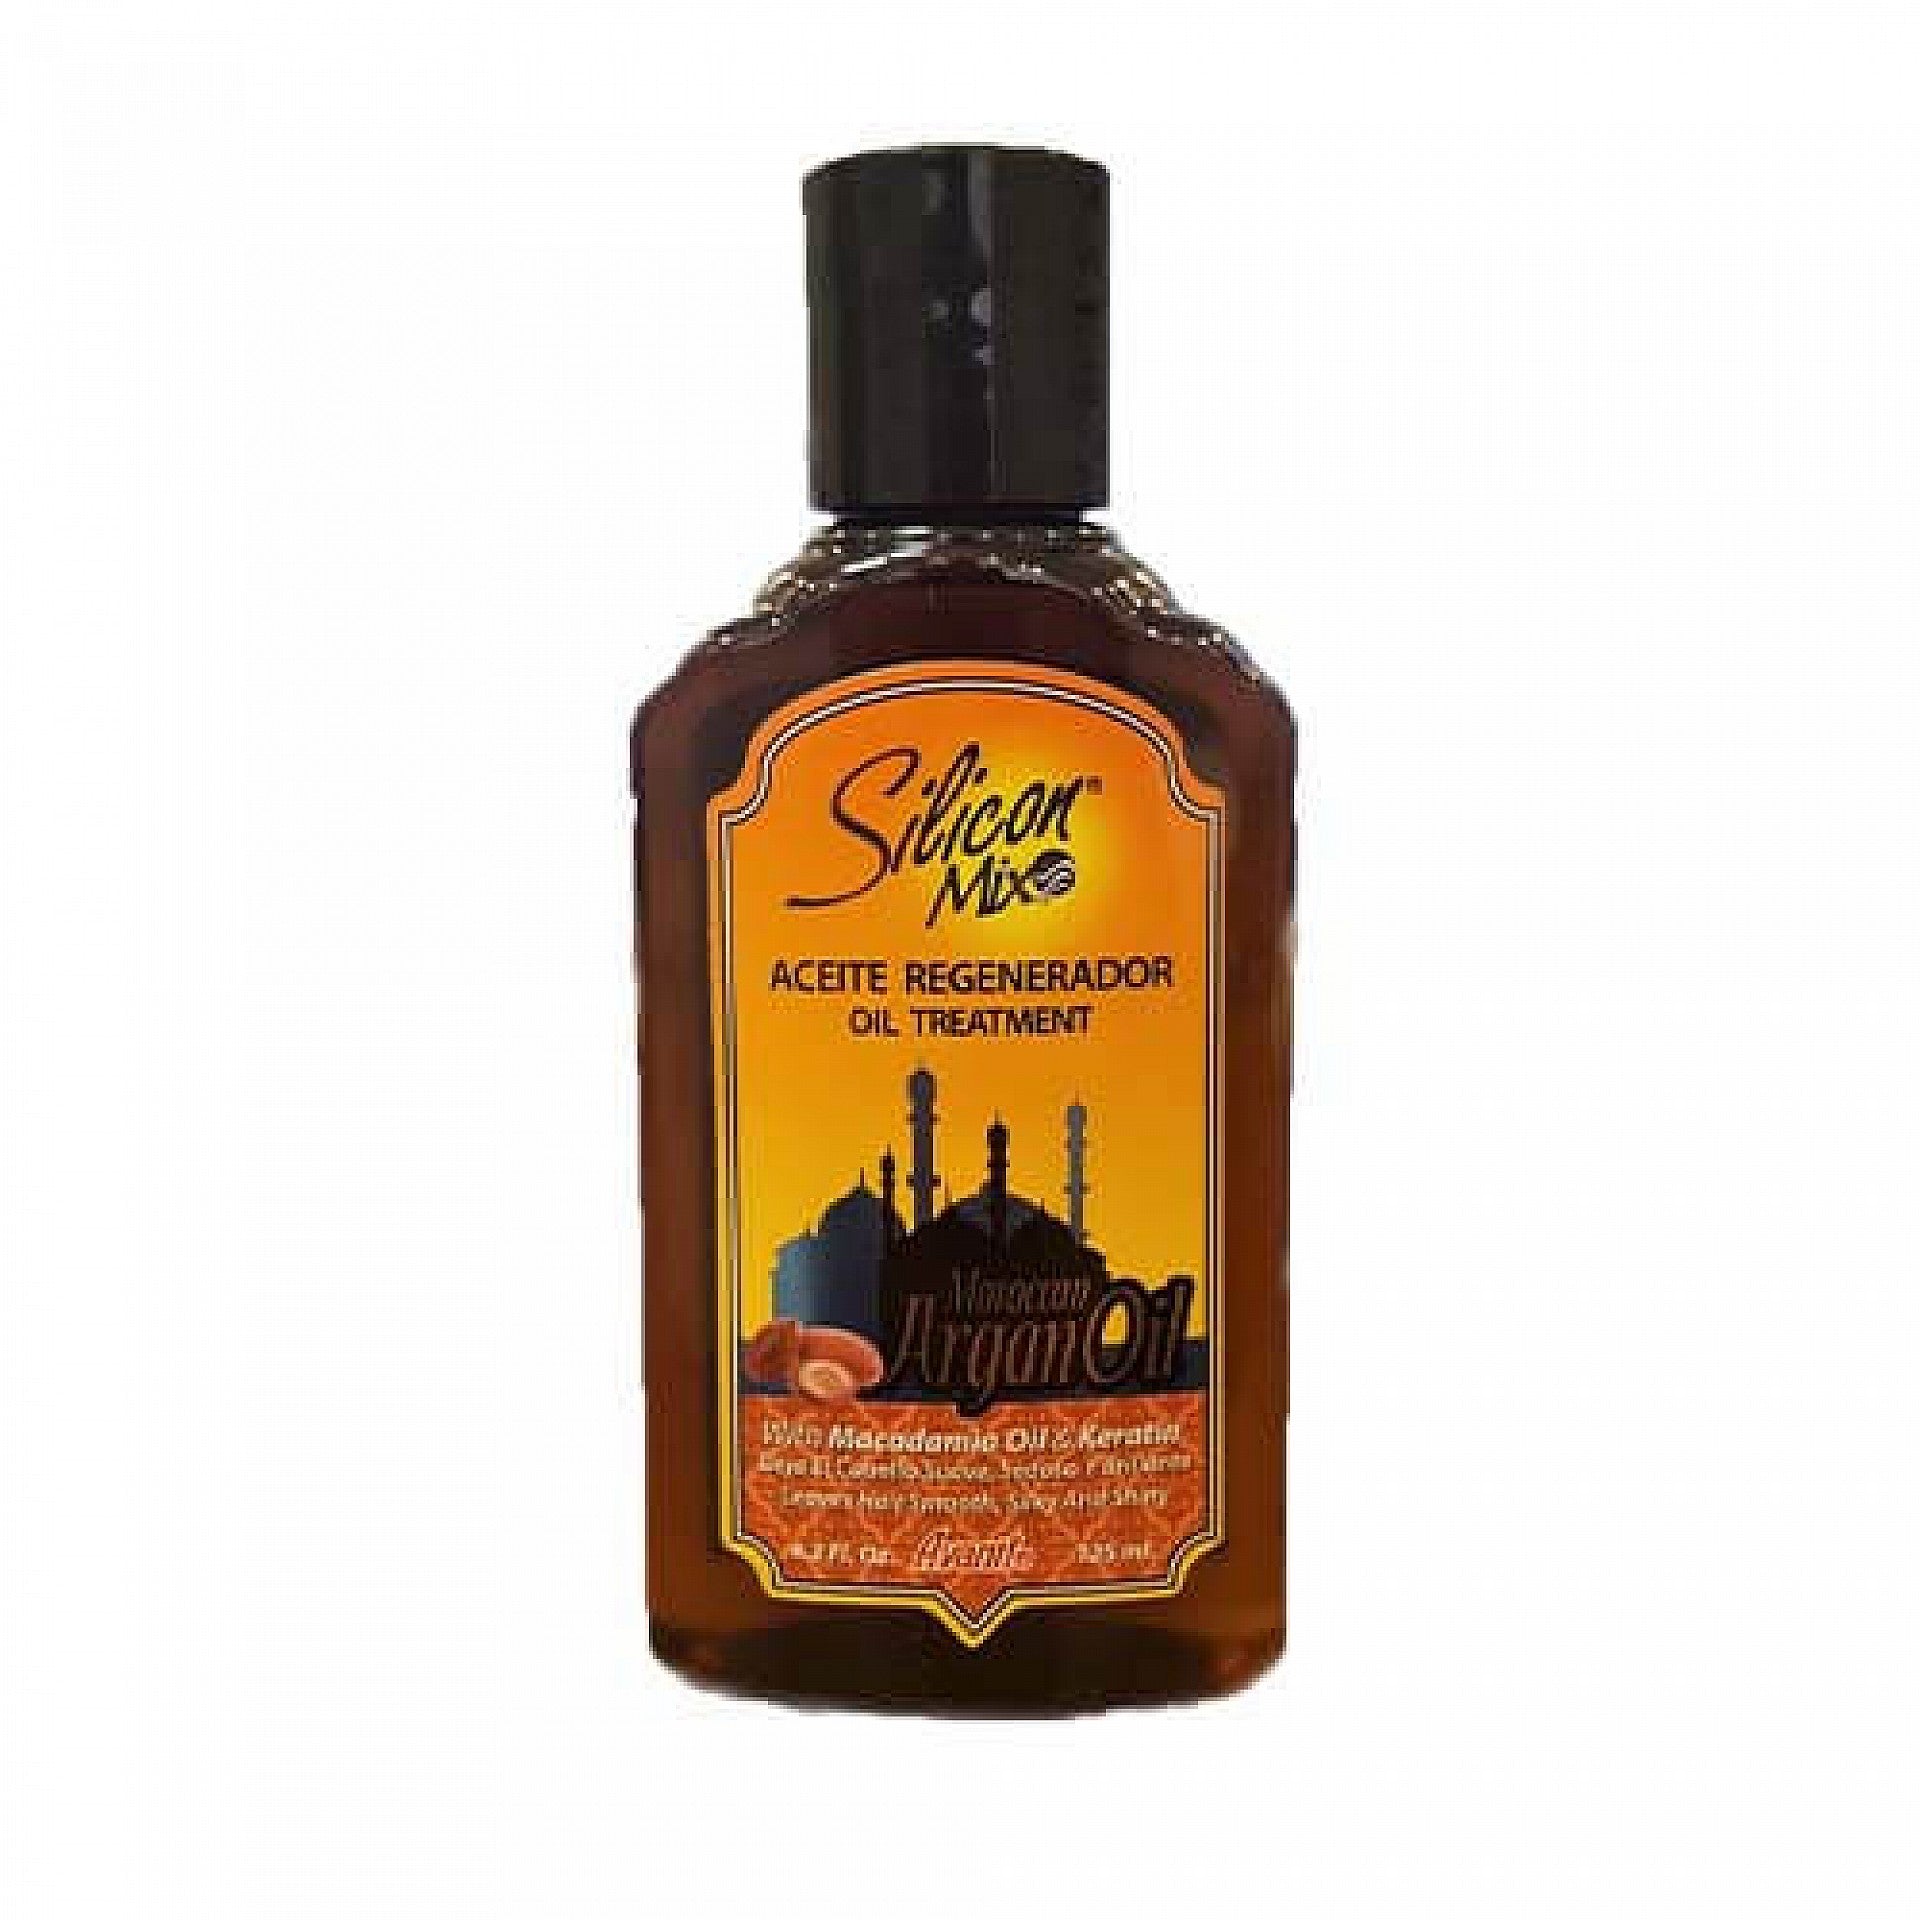 Aceite para el cabello regenerador de aceite de argán de silicio.